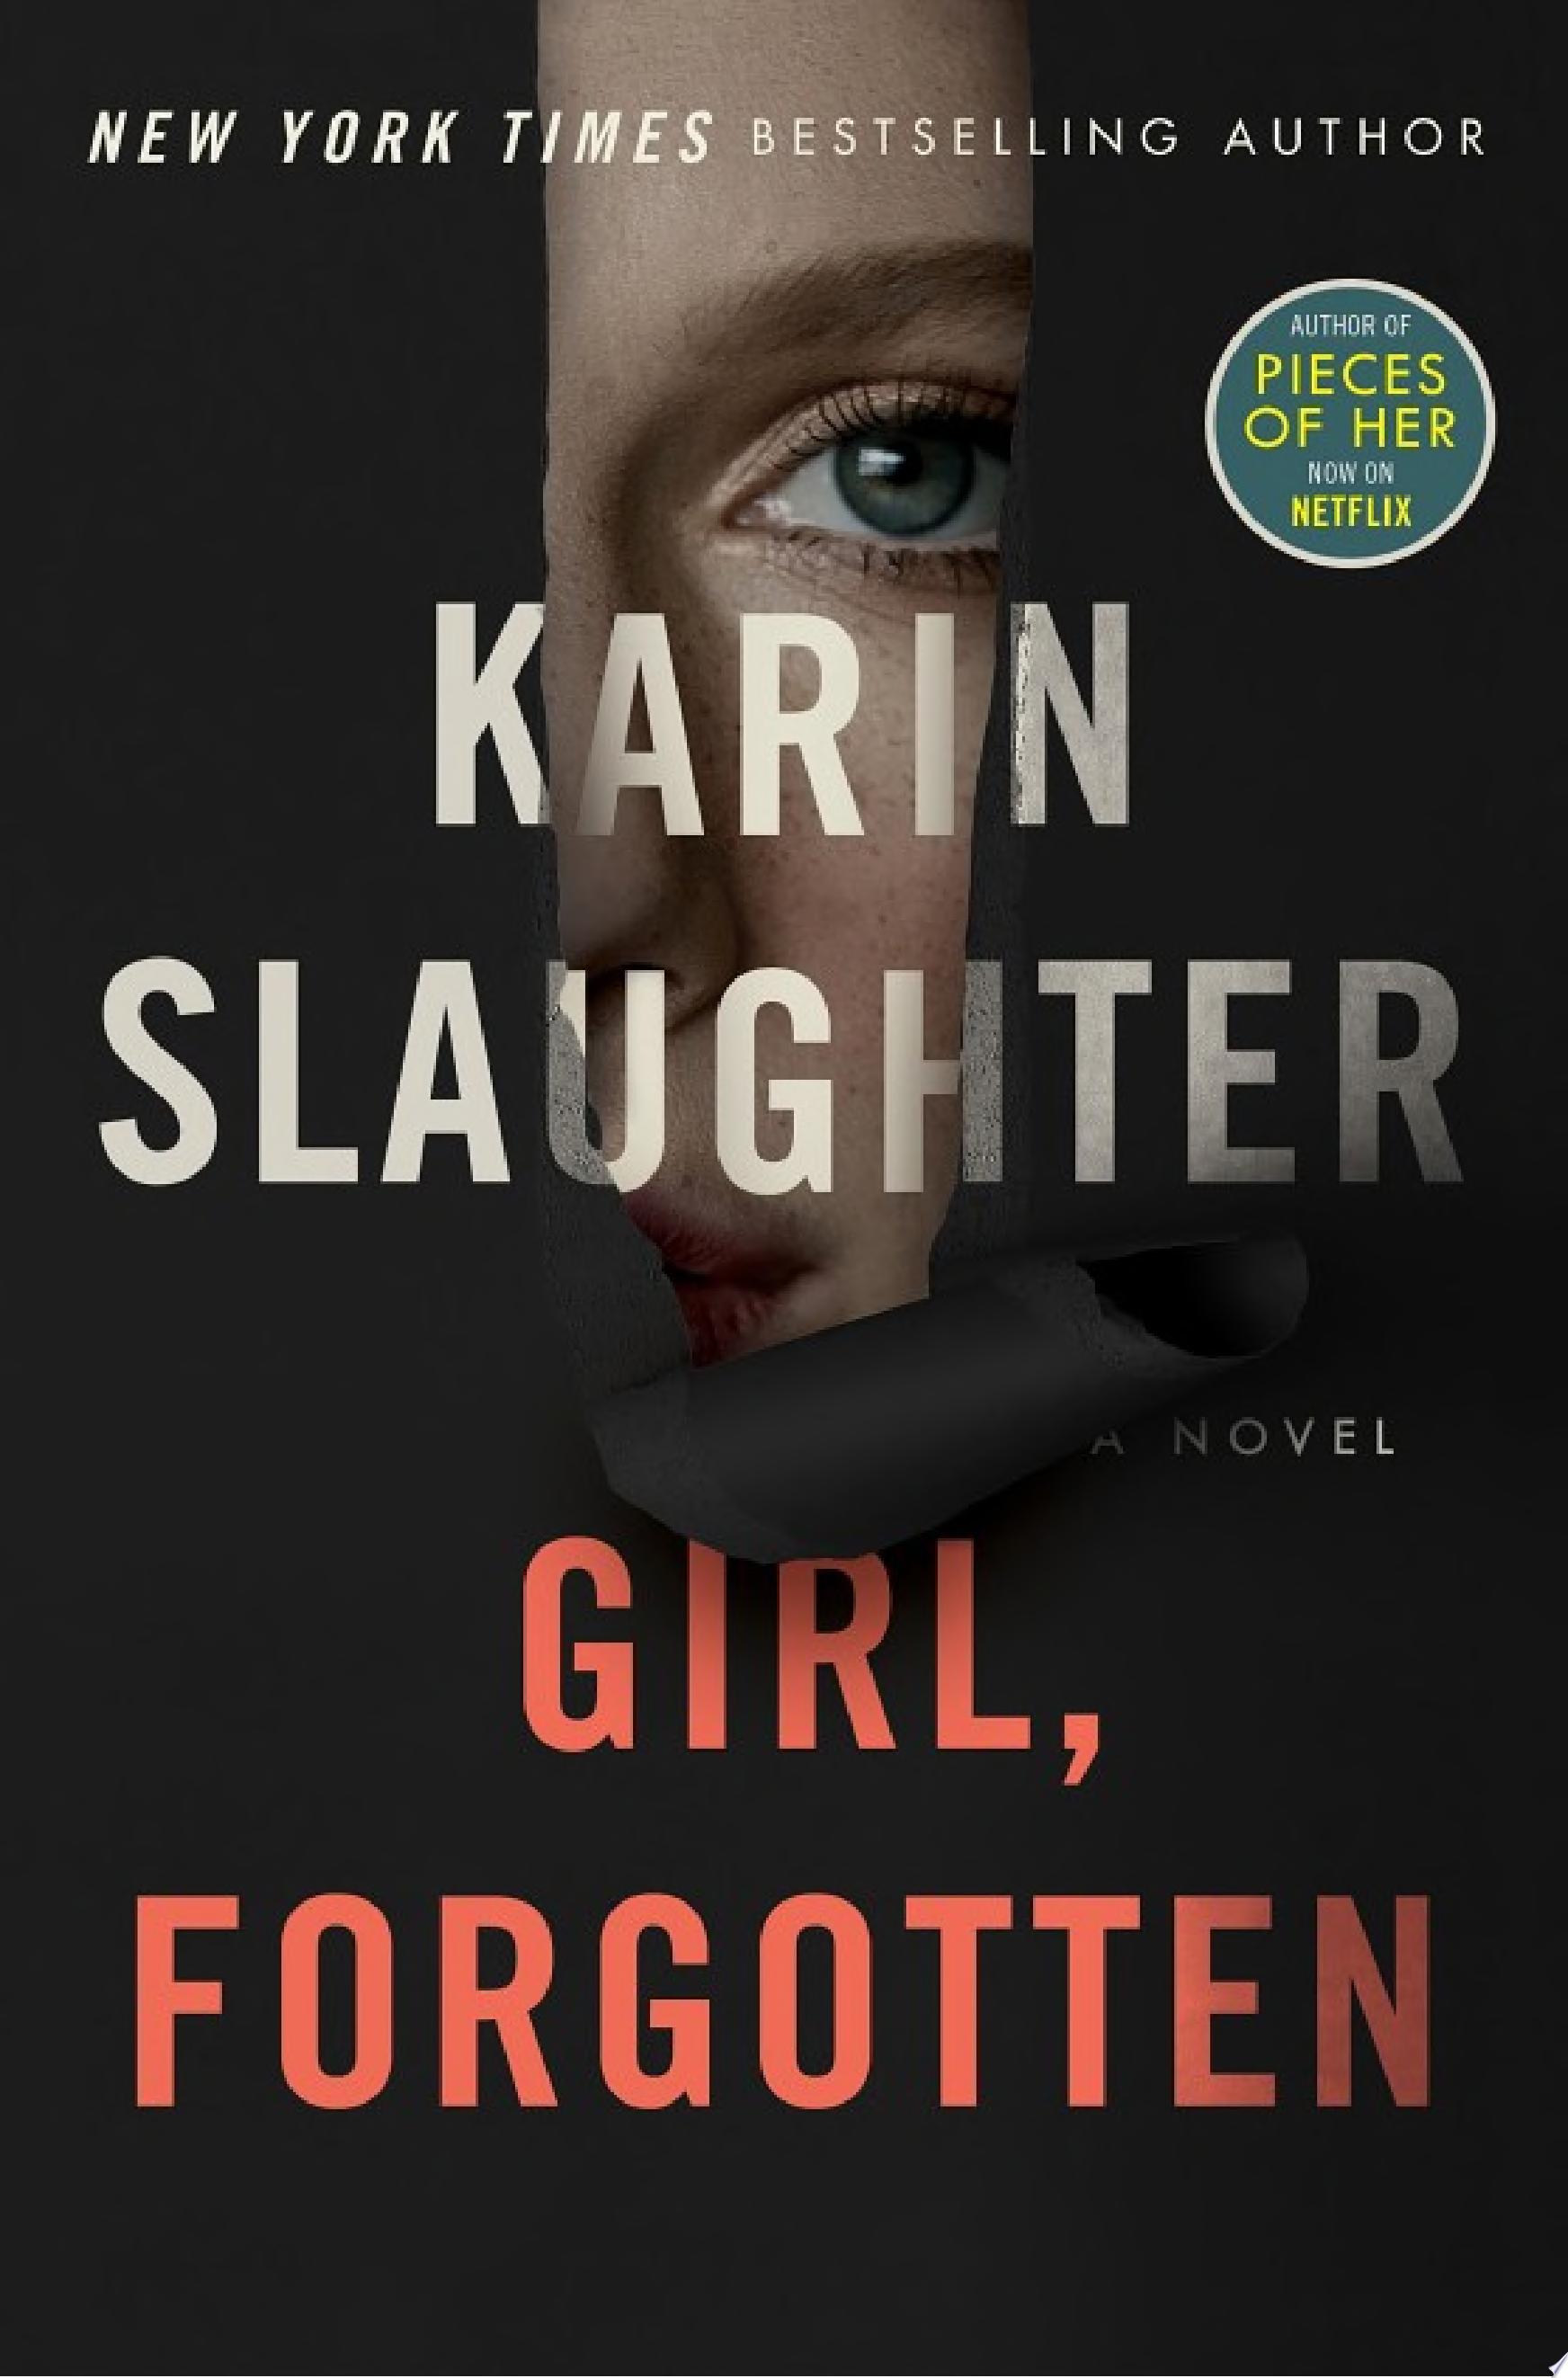 Image for "Girl, Forgotten"